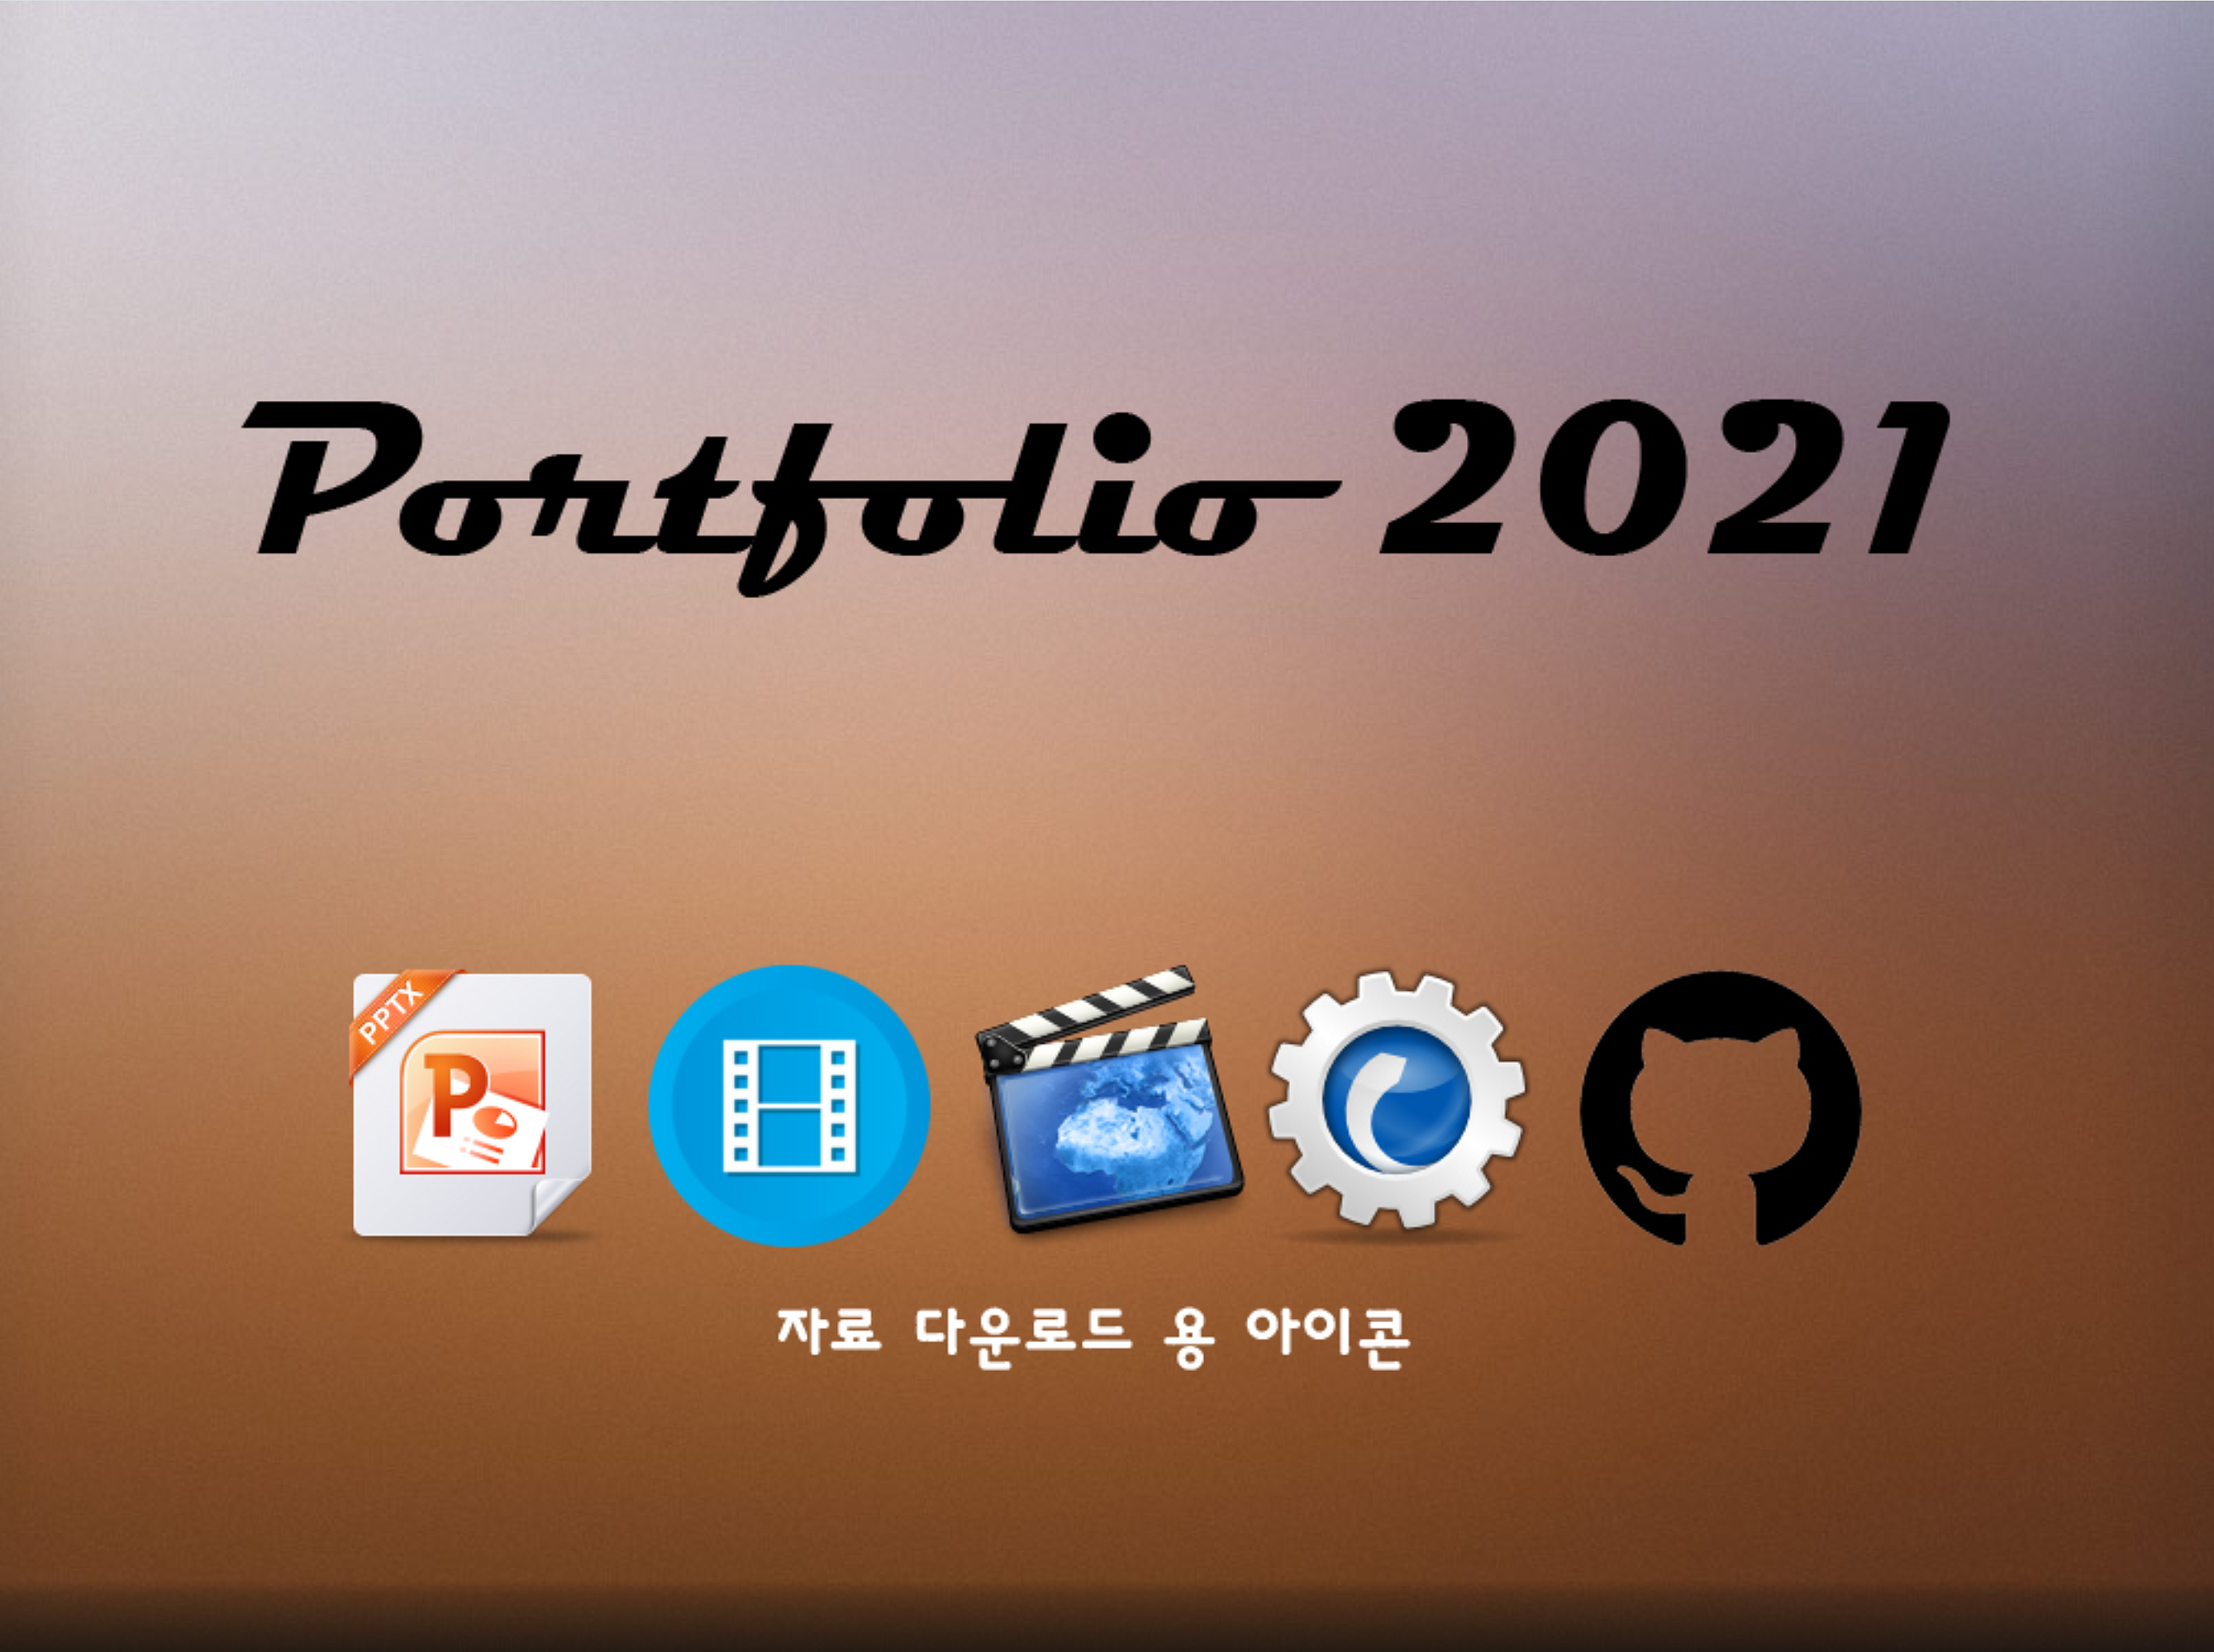 Portpolio 2021 자료 다운로드 용 아이콘